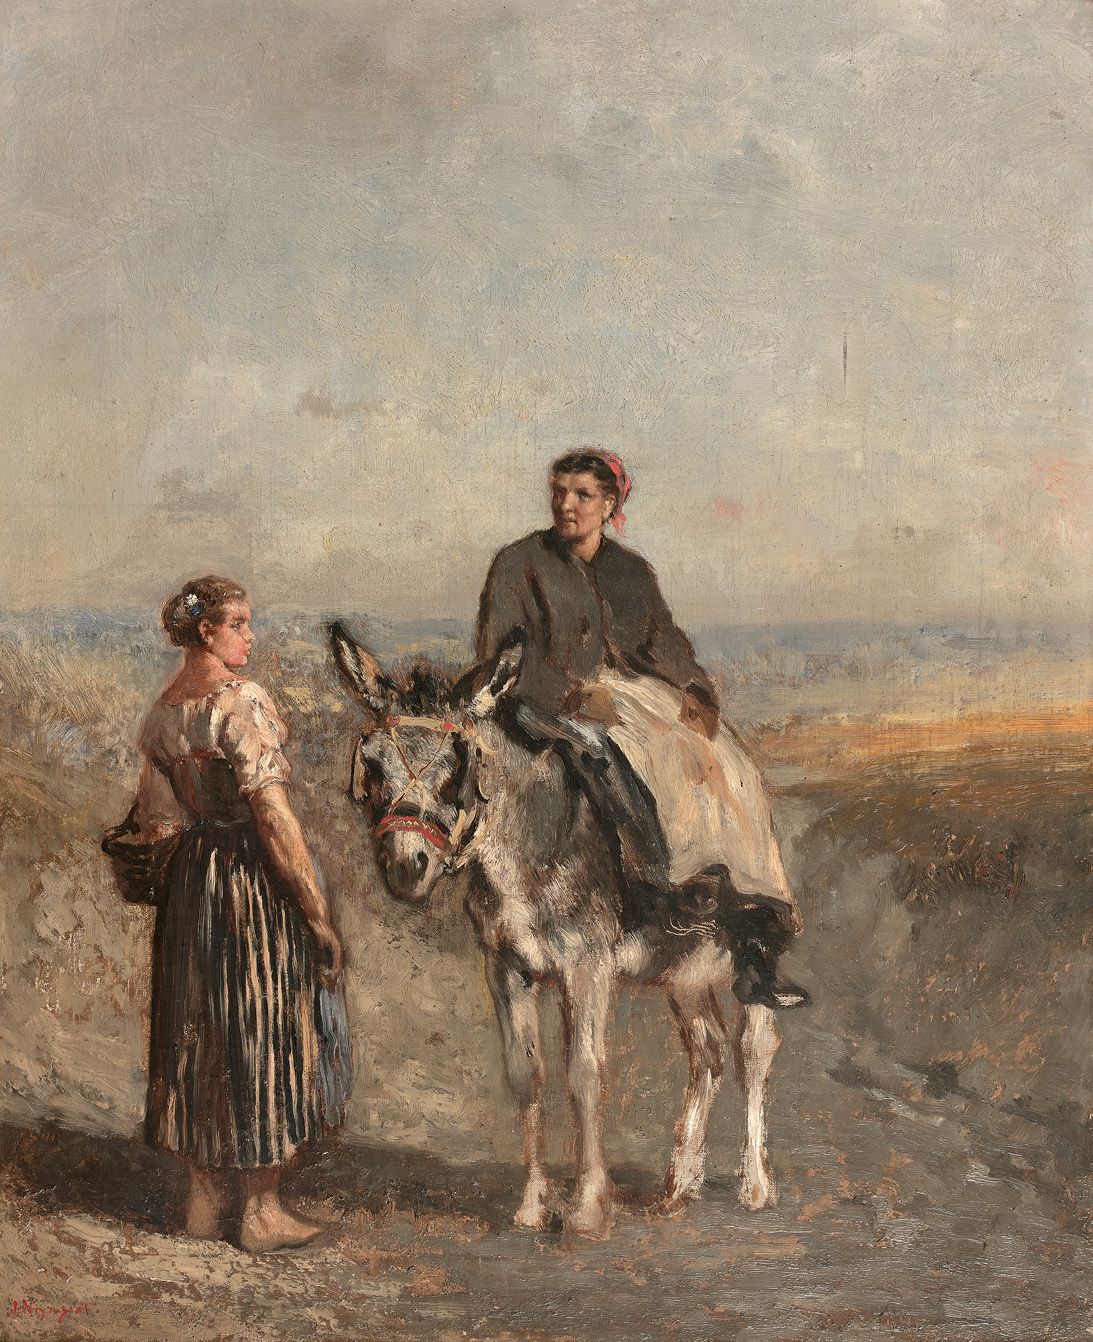 Null 儒勒-雅克-维拉萨 (1828-1893)

农妇和骡夫

帆布左下方有签名。

高度47 - 宽度38厘米